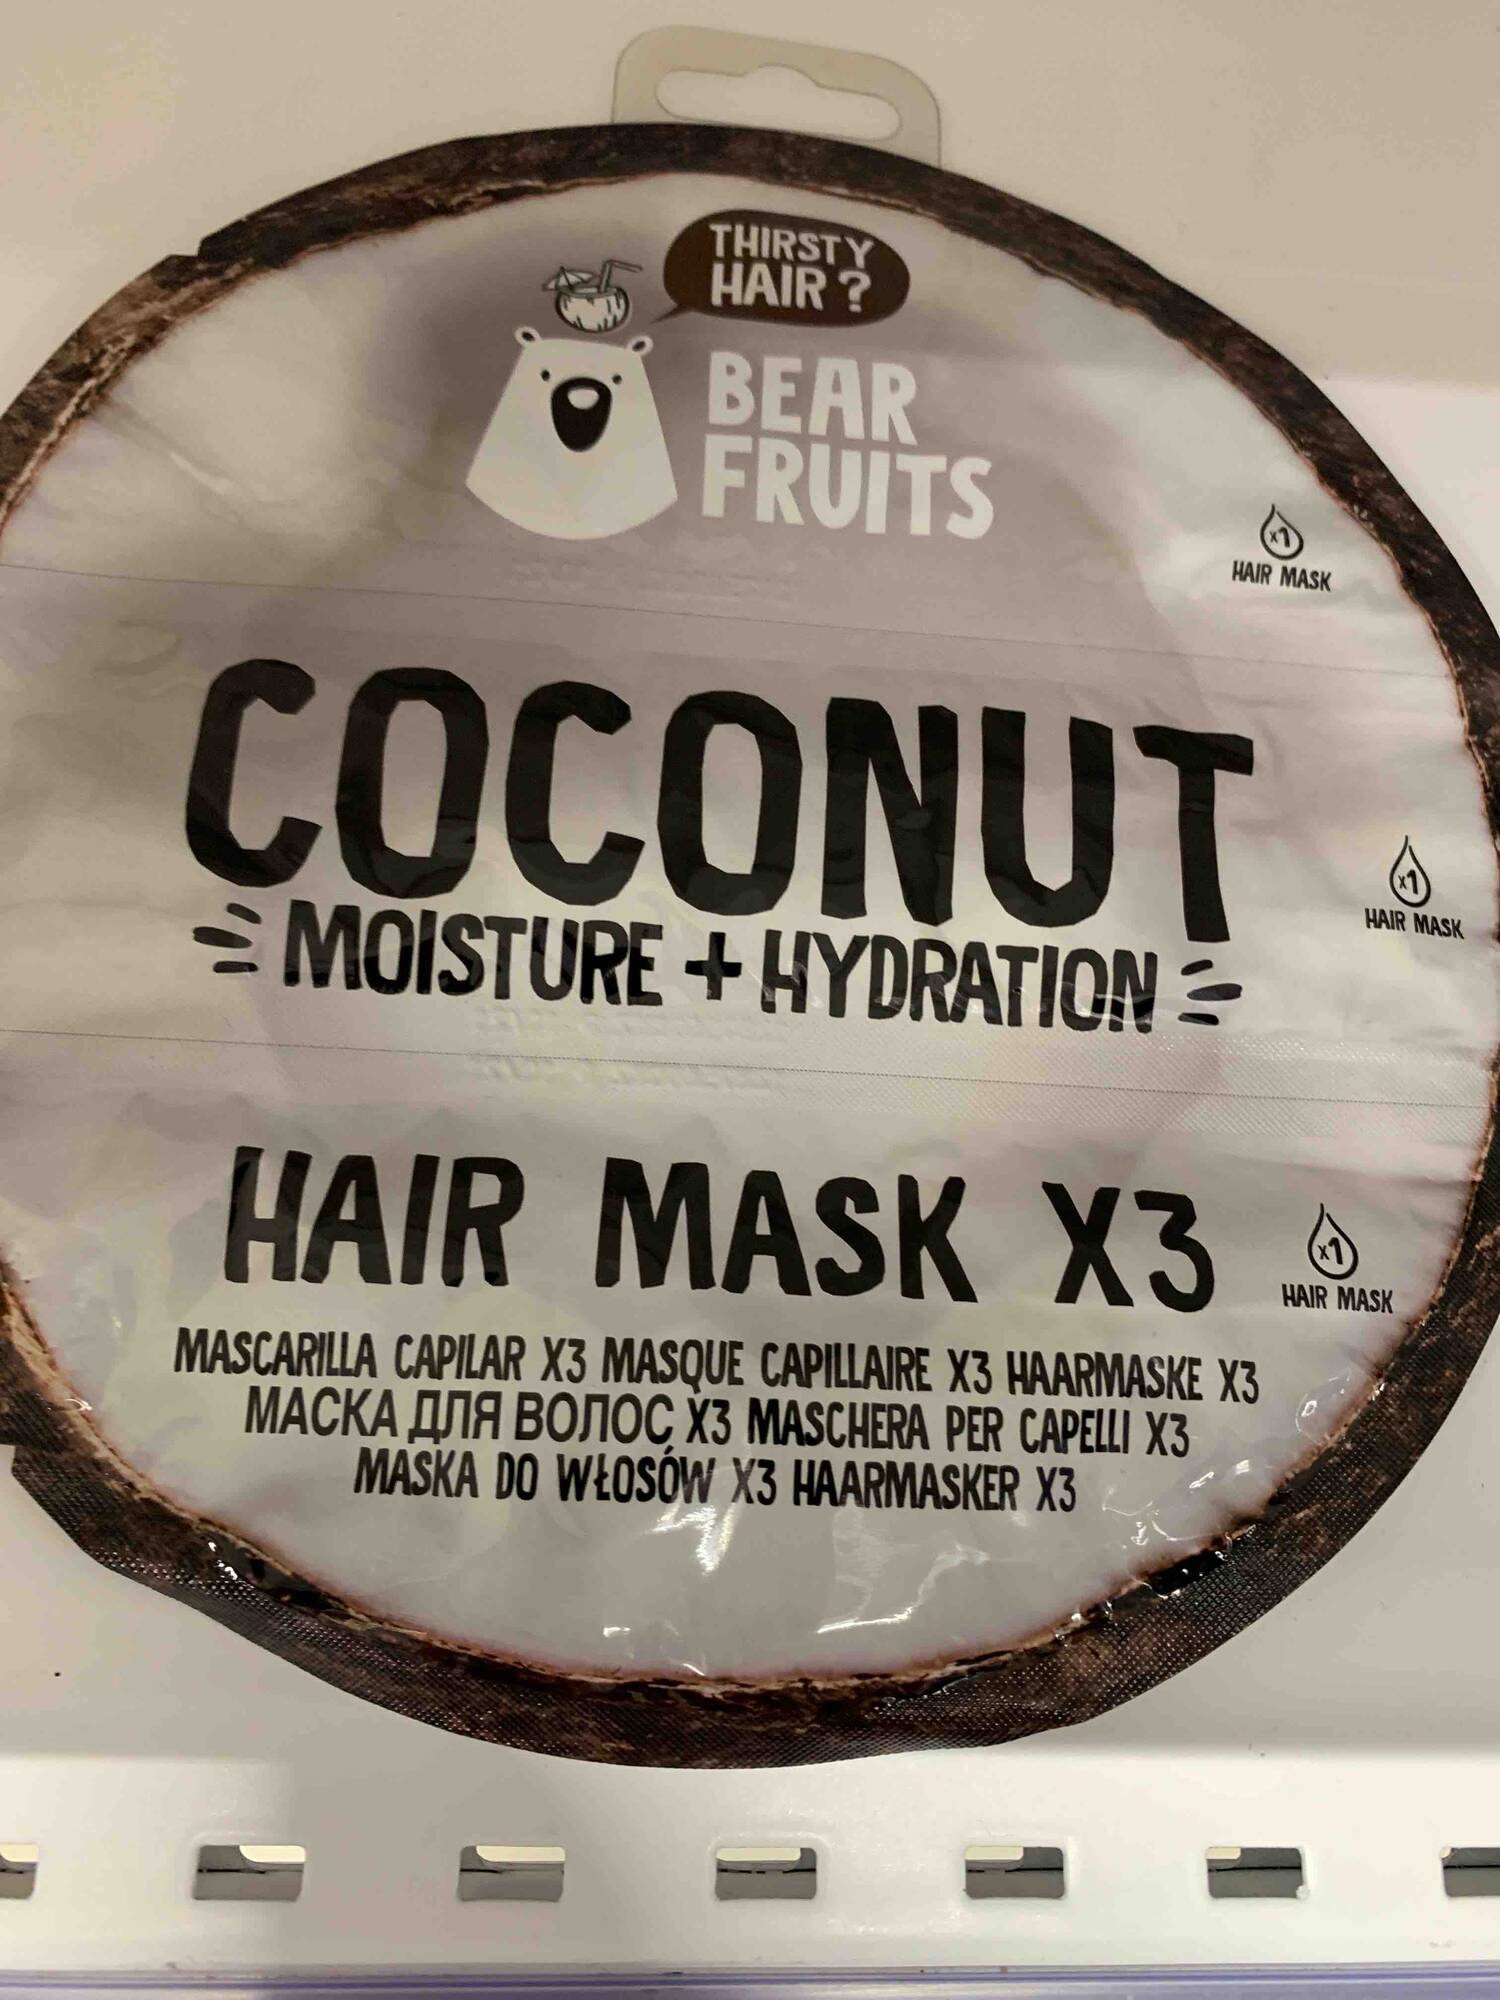 BEAR FRUITS - Coconut moisture et hydration - Masque capillaire x3